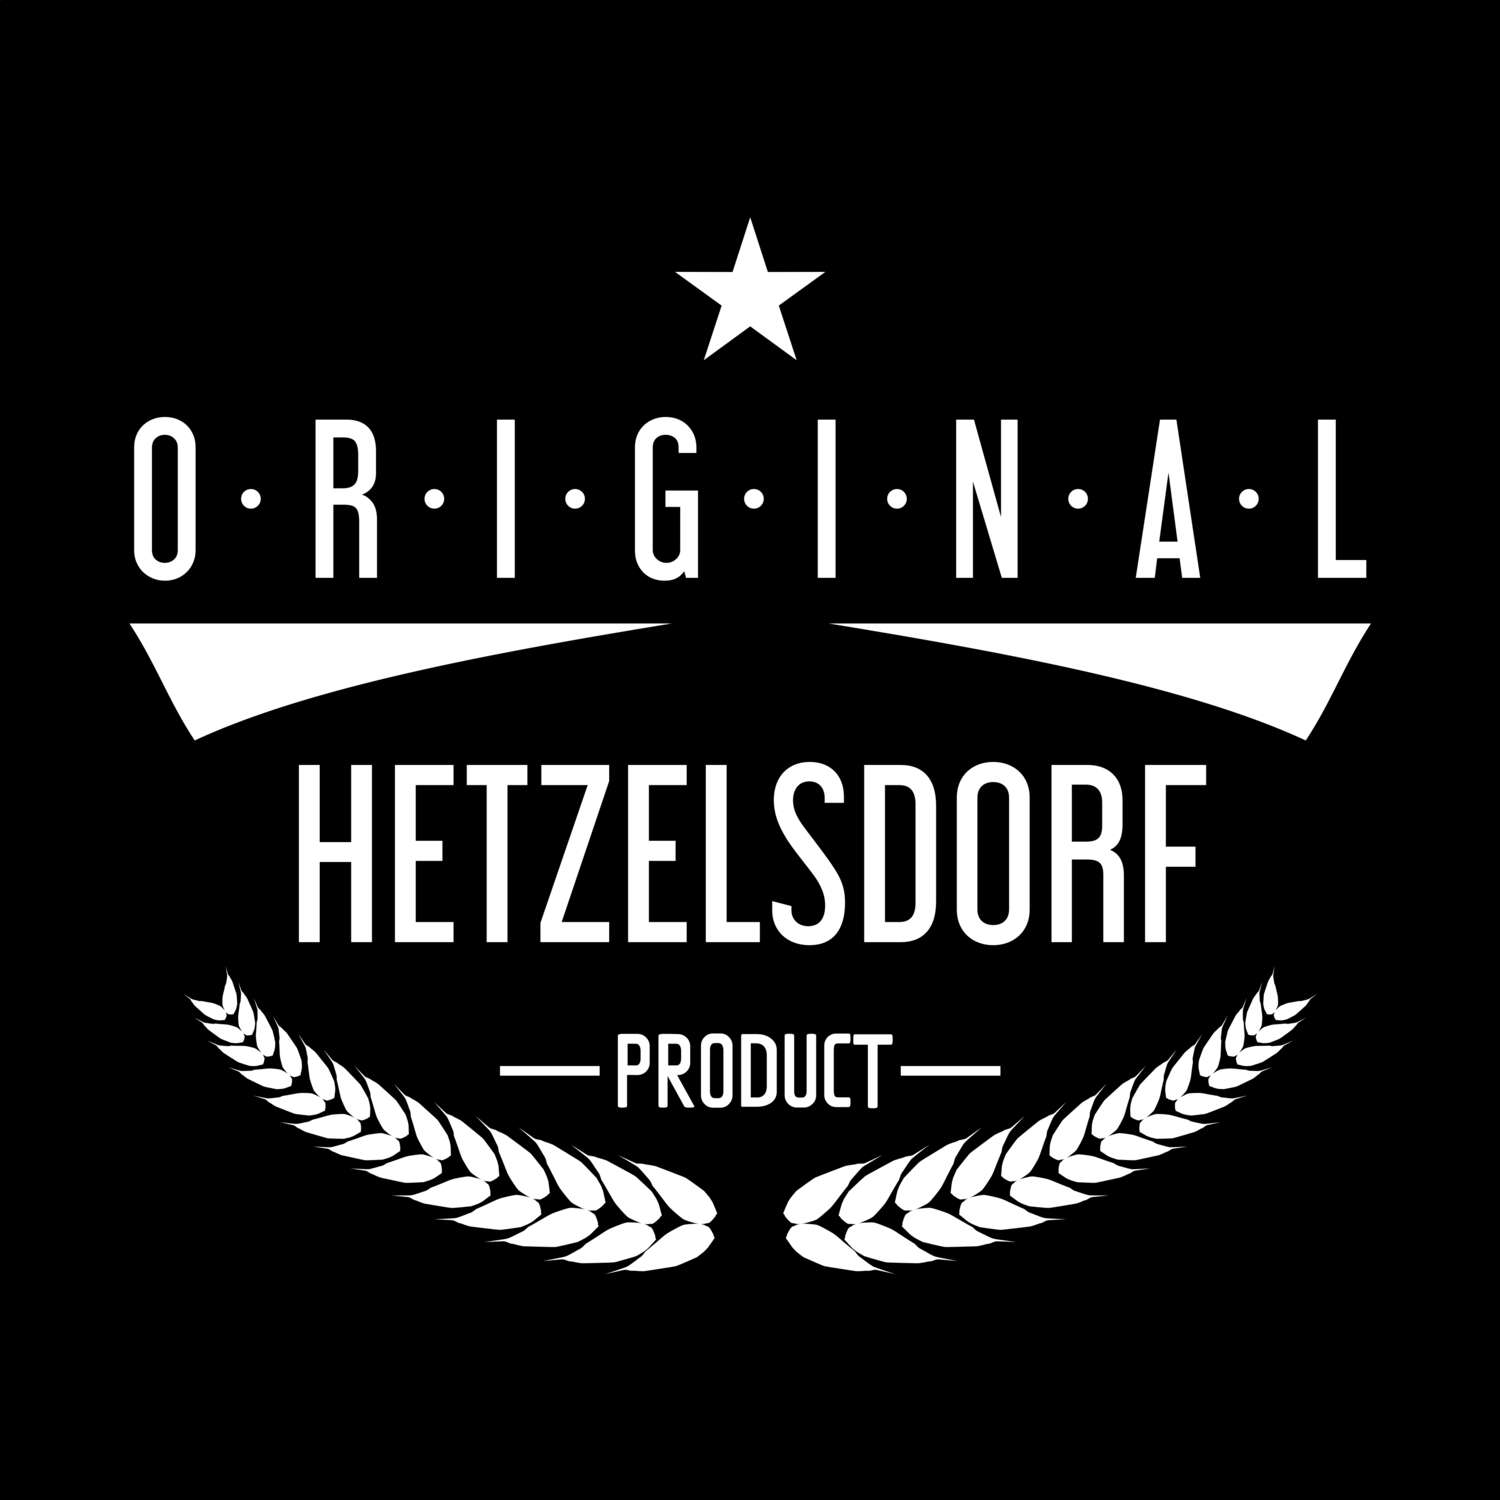 Hetzelsdorf T-Shirt »Original Product«